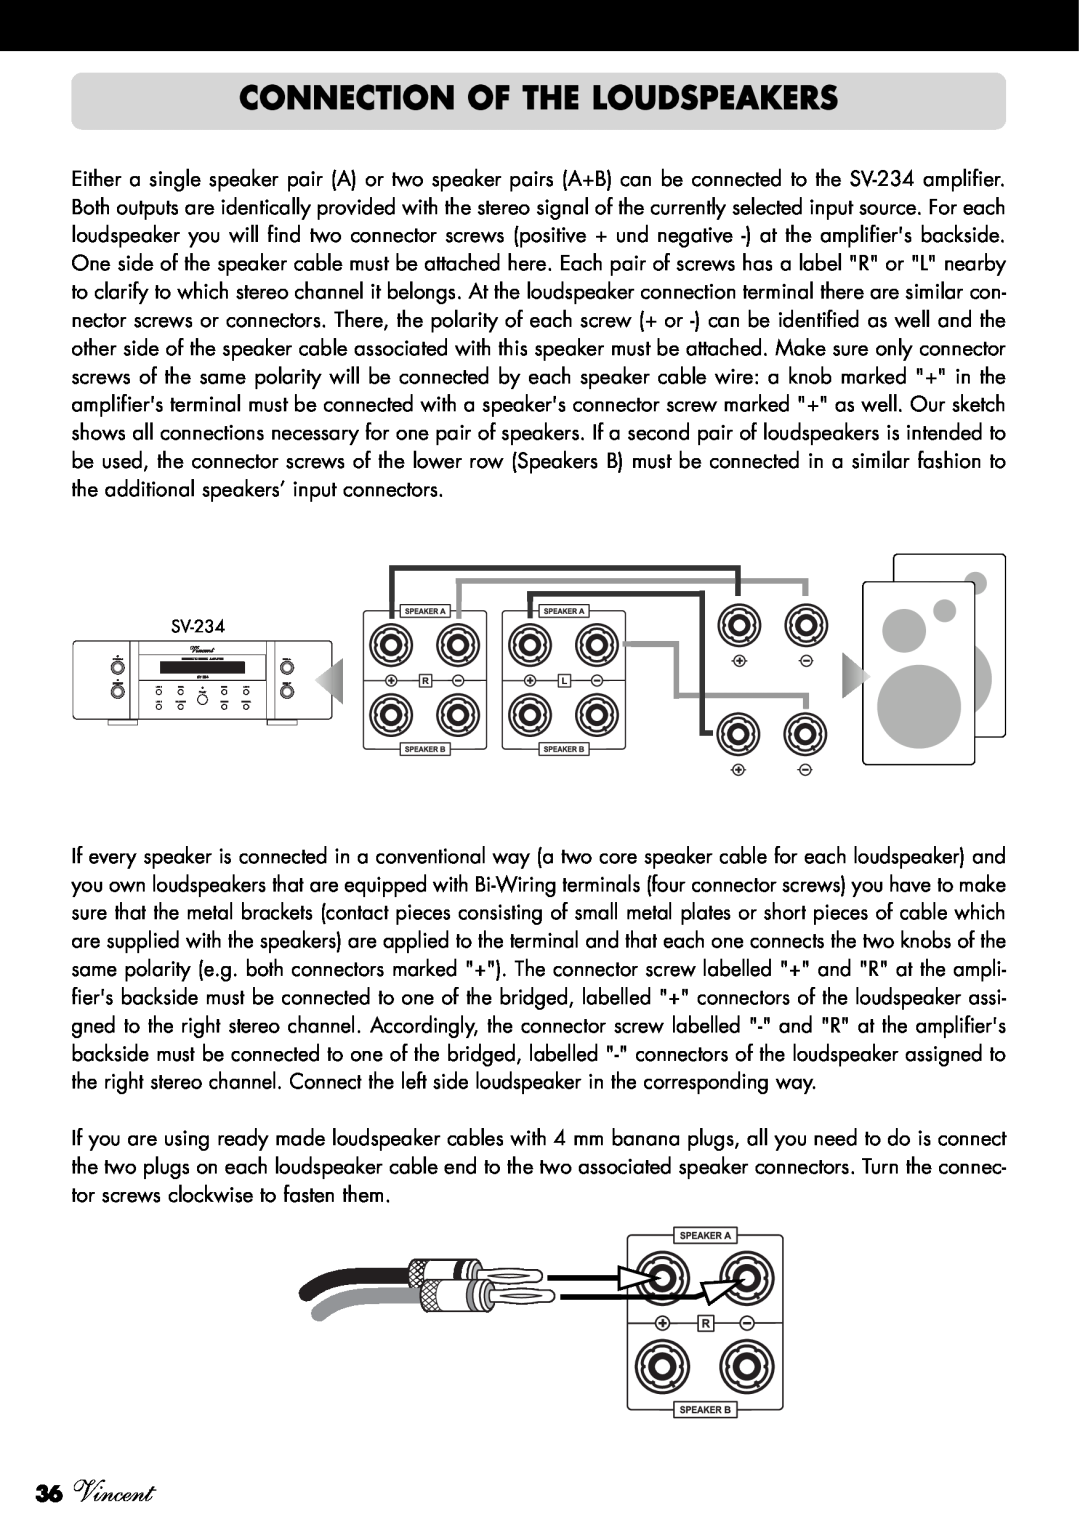 Vincent Audio SV-234 manuel dutilisation Connection Of The Loudspeakers, 36Vincent 